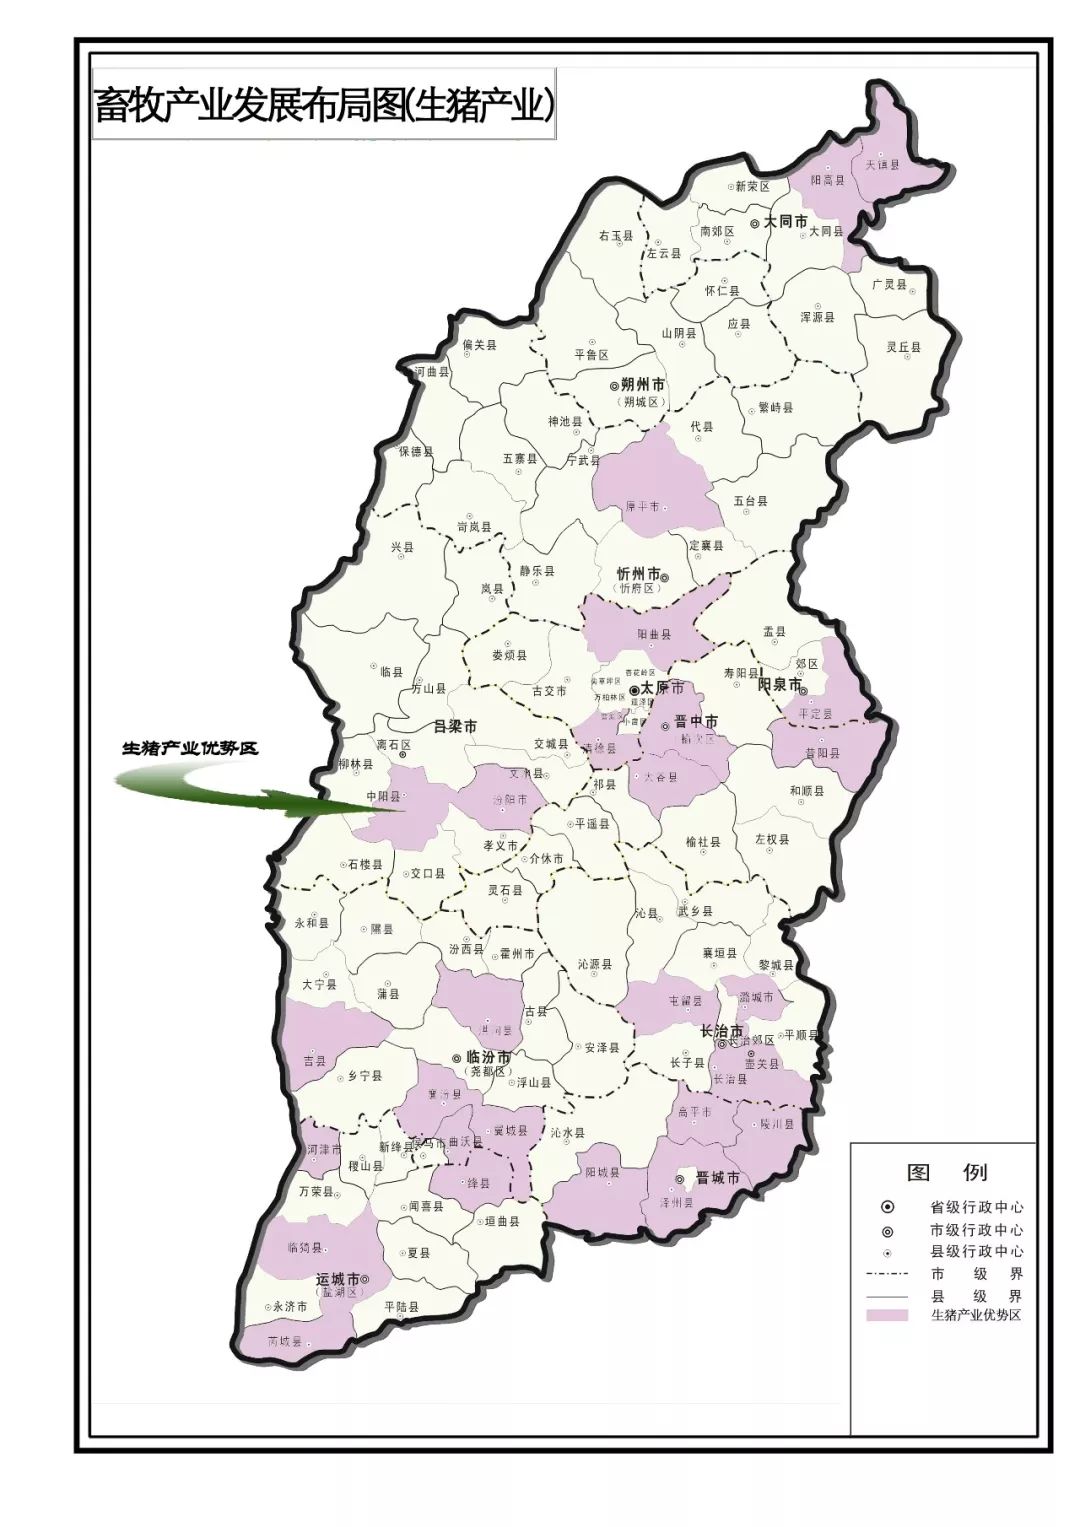 山西省十三五农业农村经济发展规划布局图